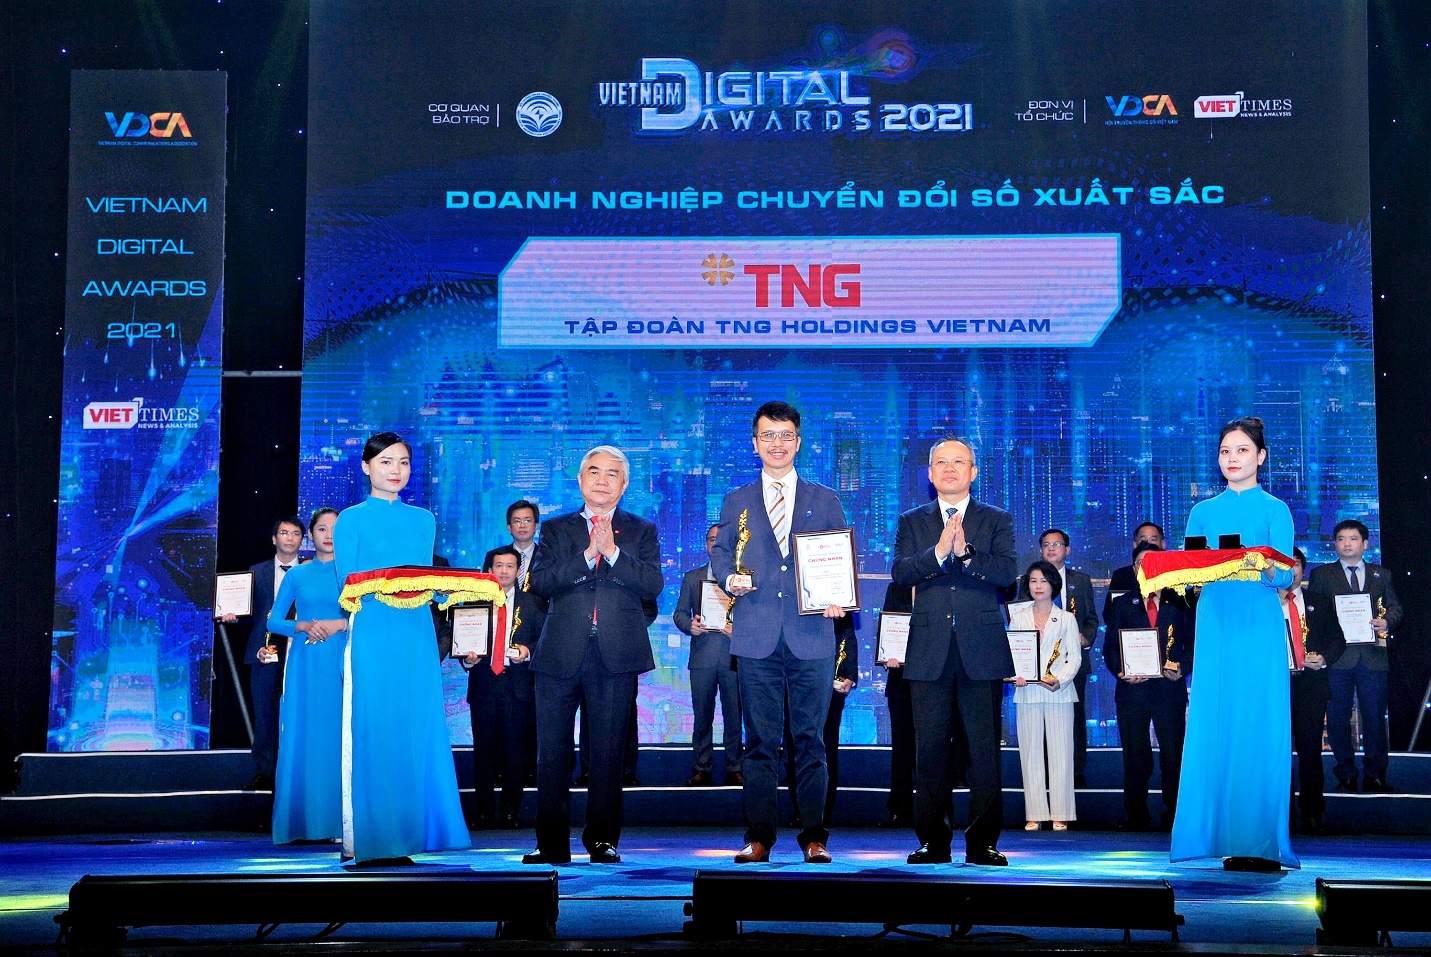 Giải thưởng Chuyển đổi số Việt Nam vinh danh TNG Holdings Vietnam